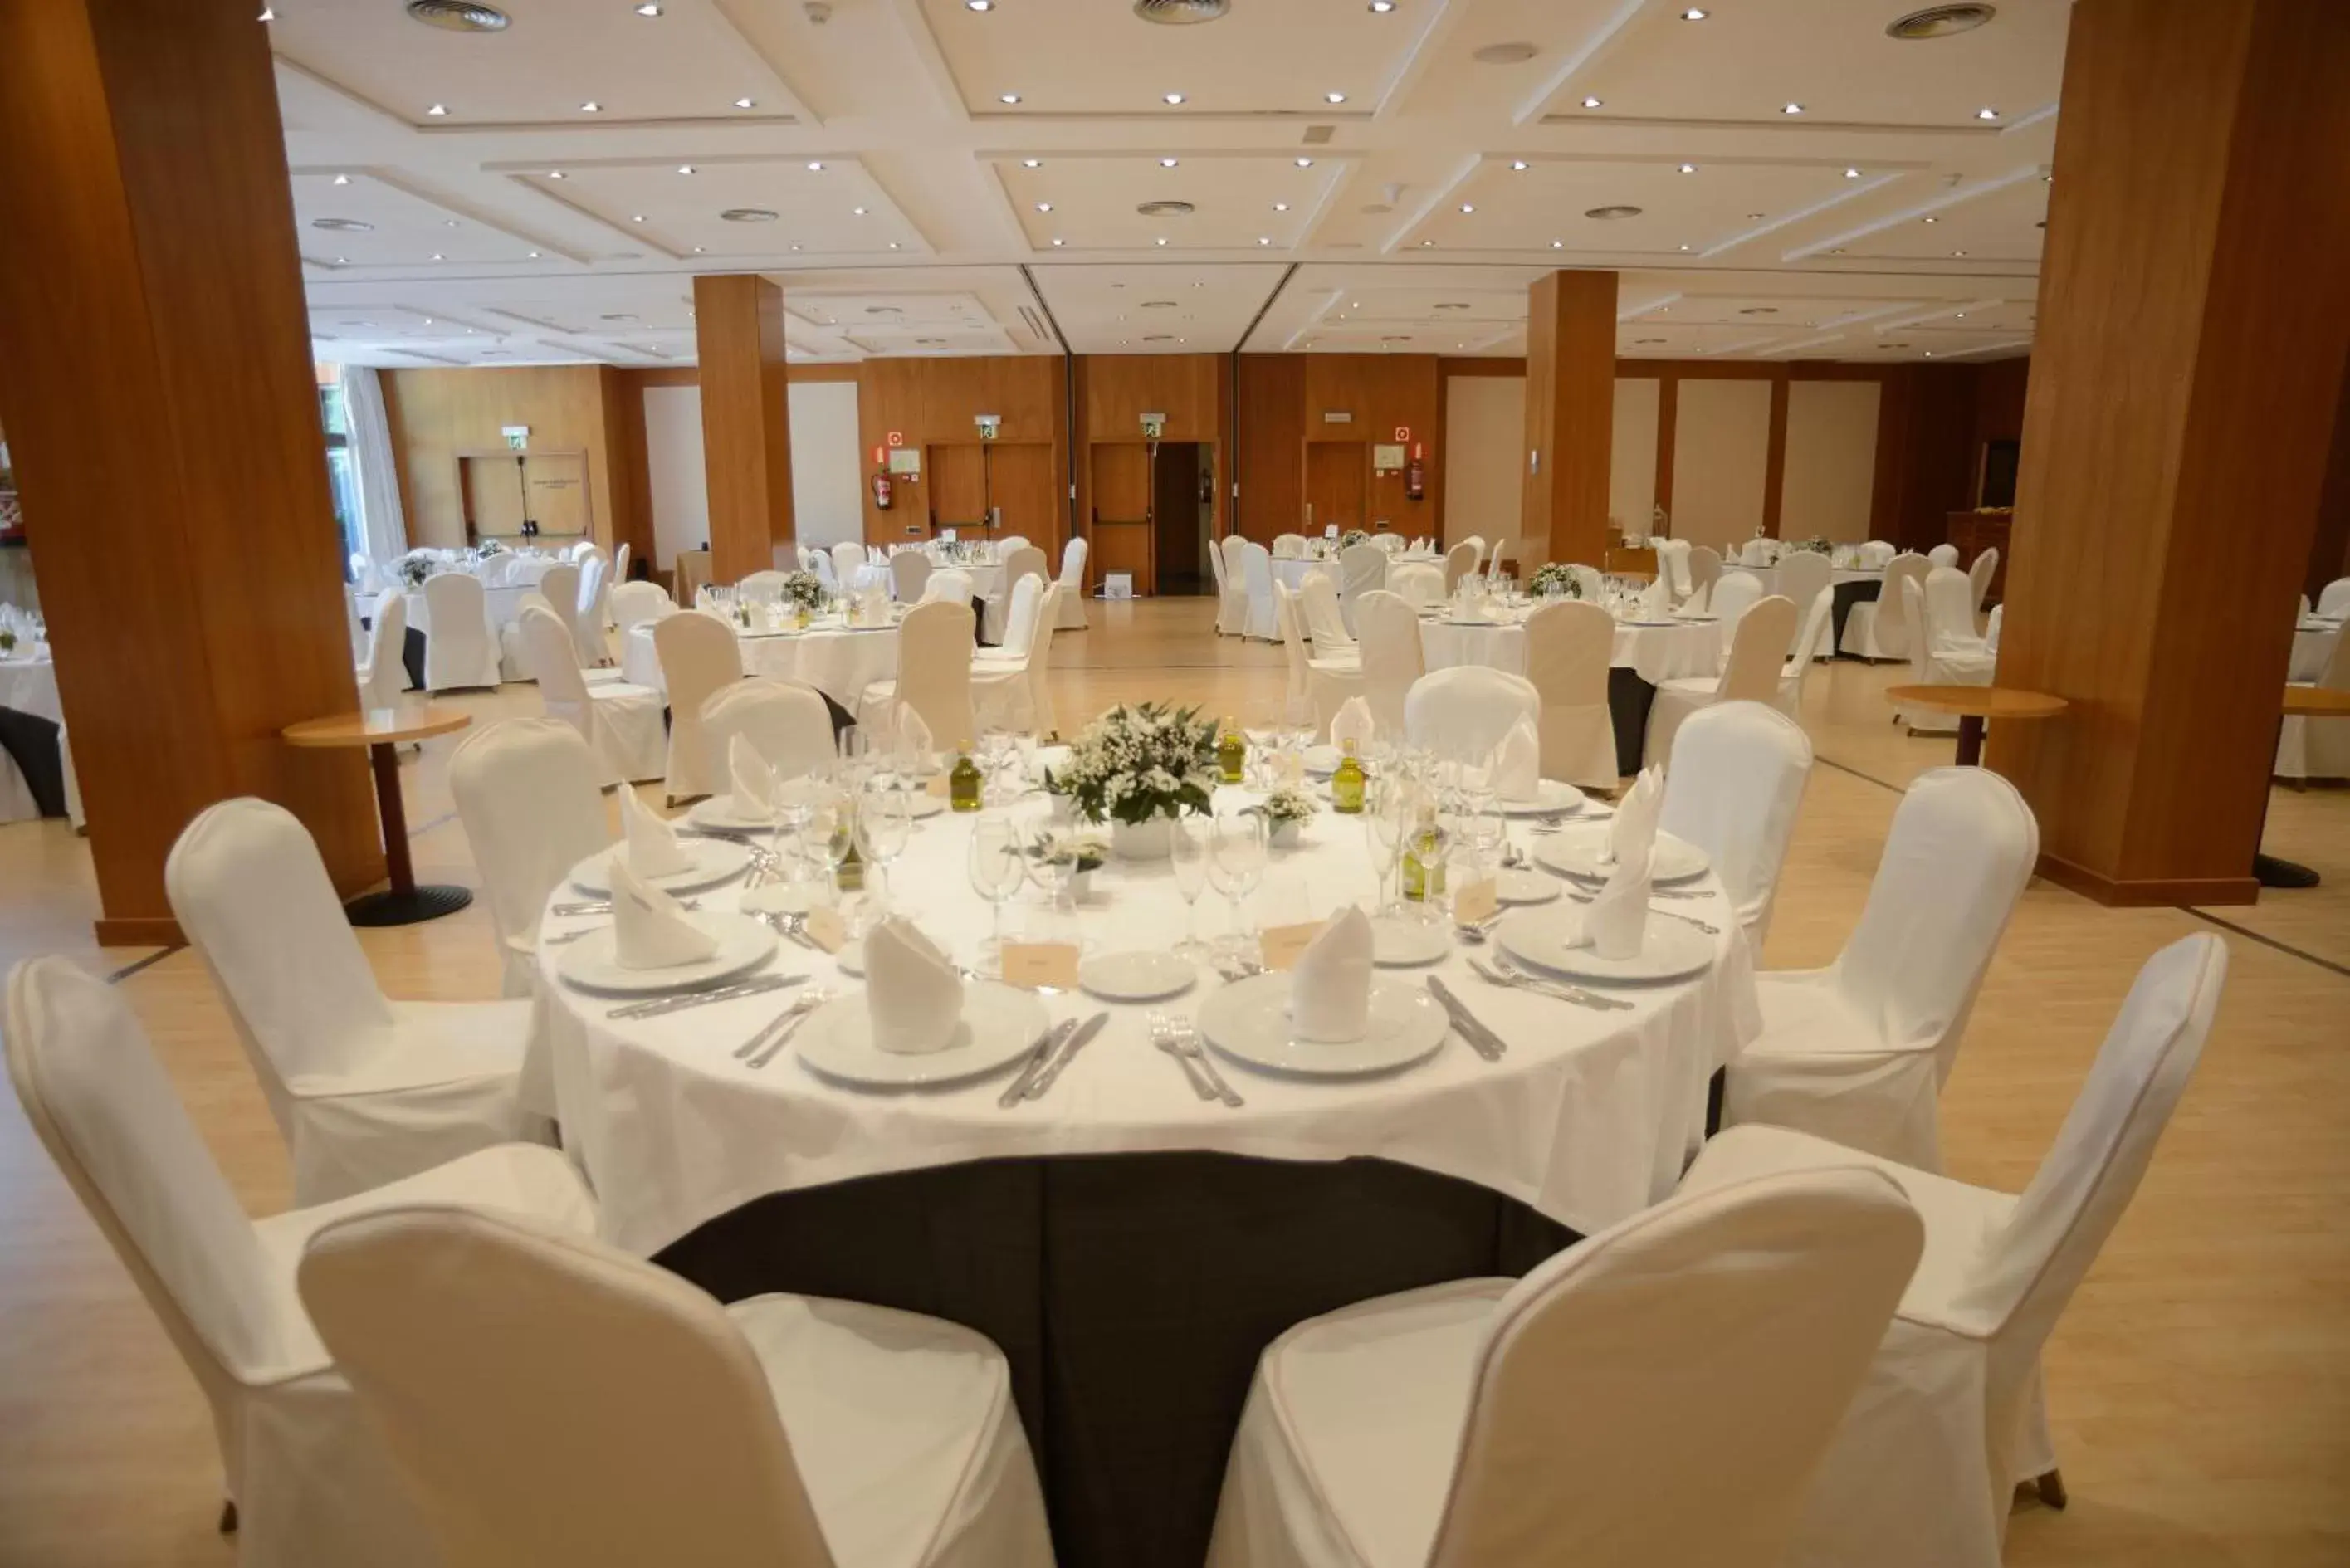 Business facilities, Banquet Facilities in Abba Garden